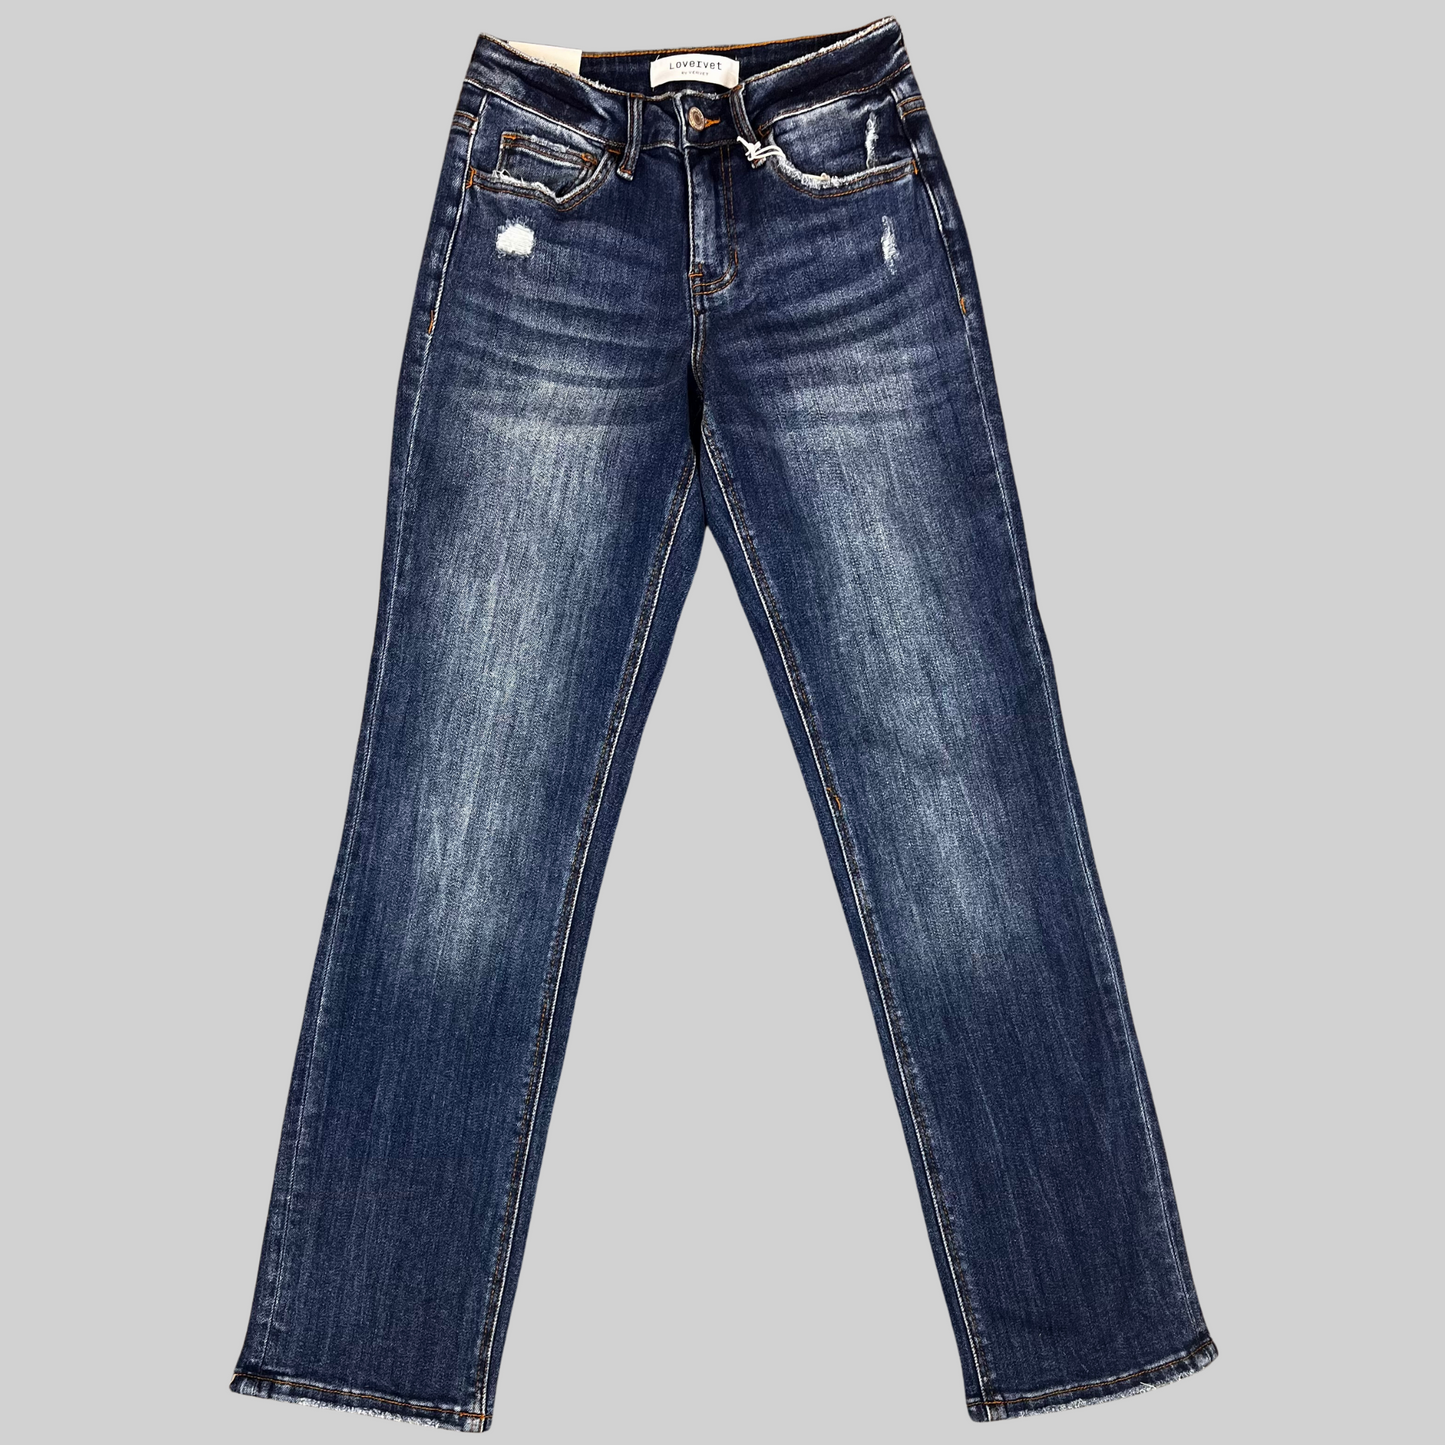 Lovervet Medium Wash Jeans